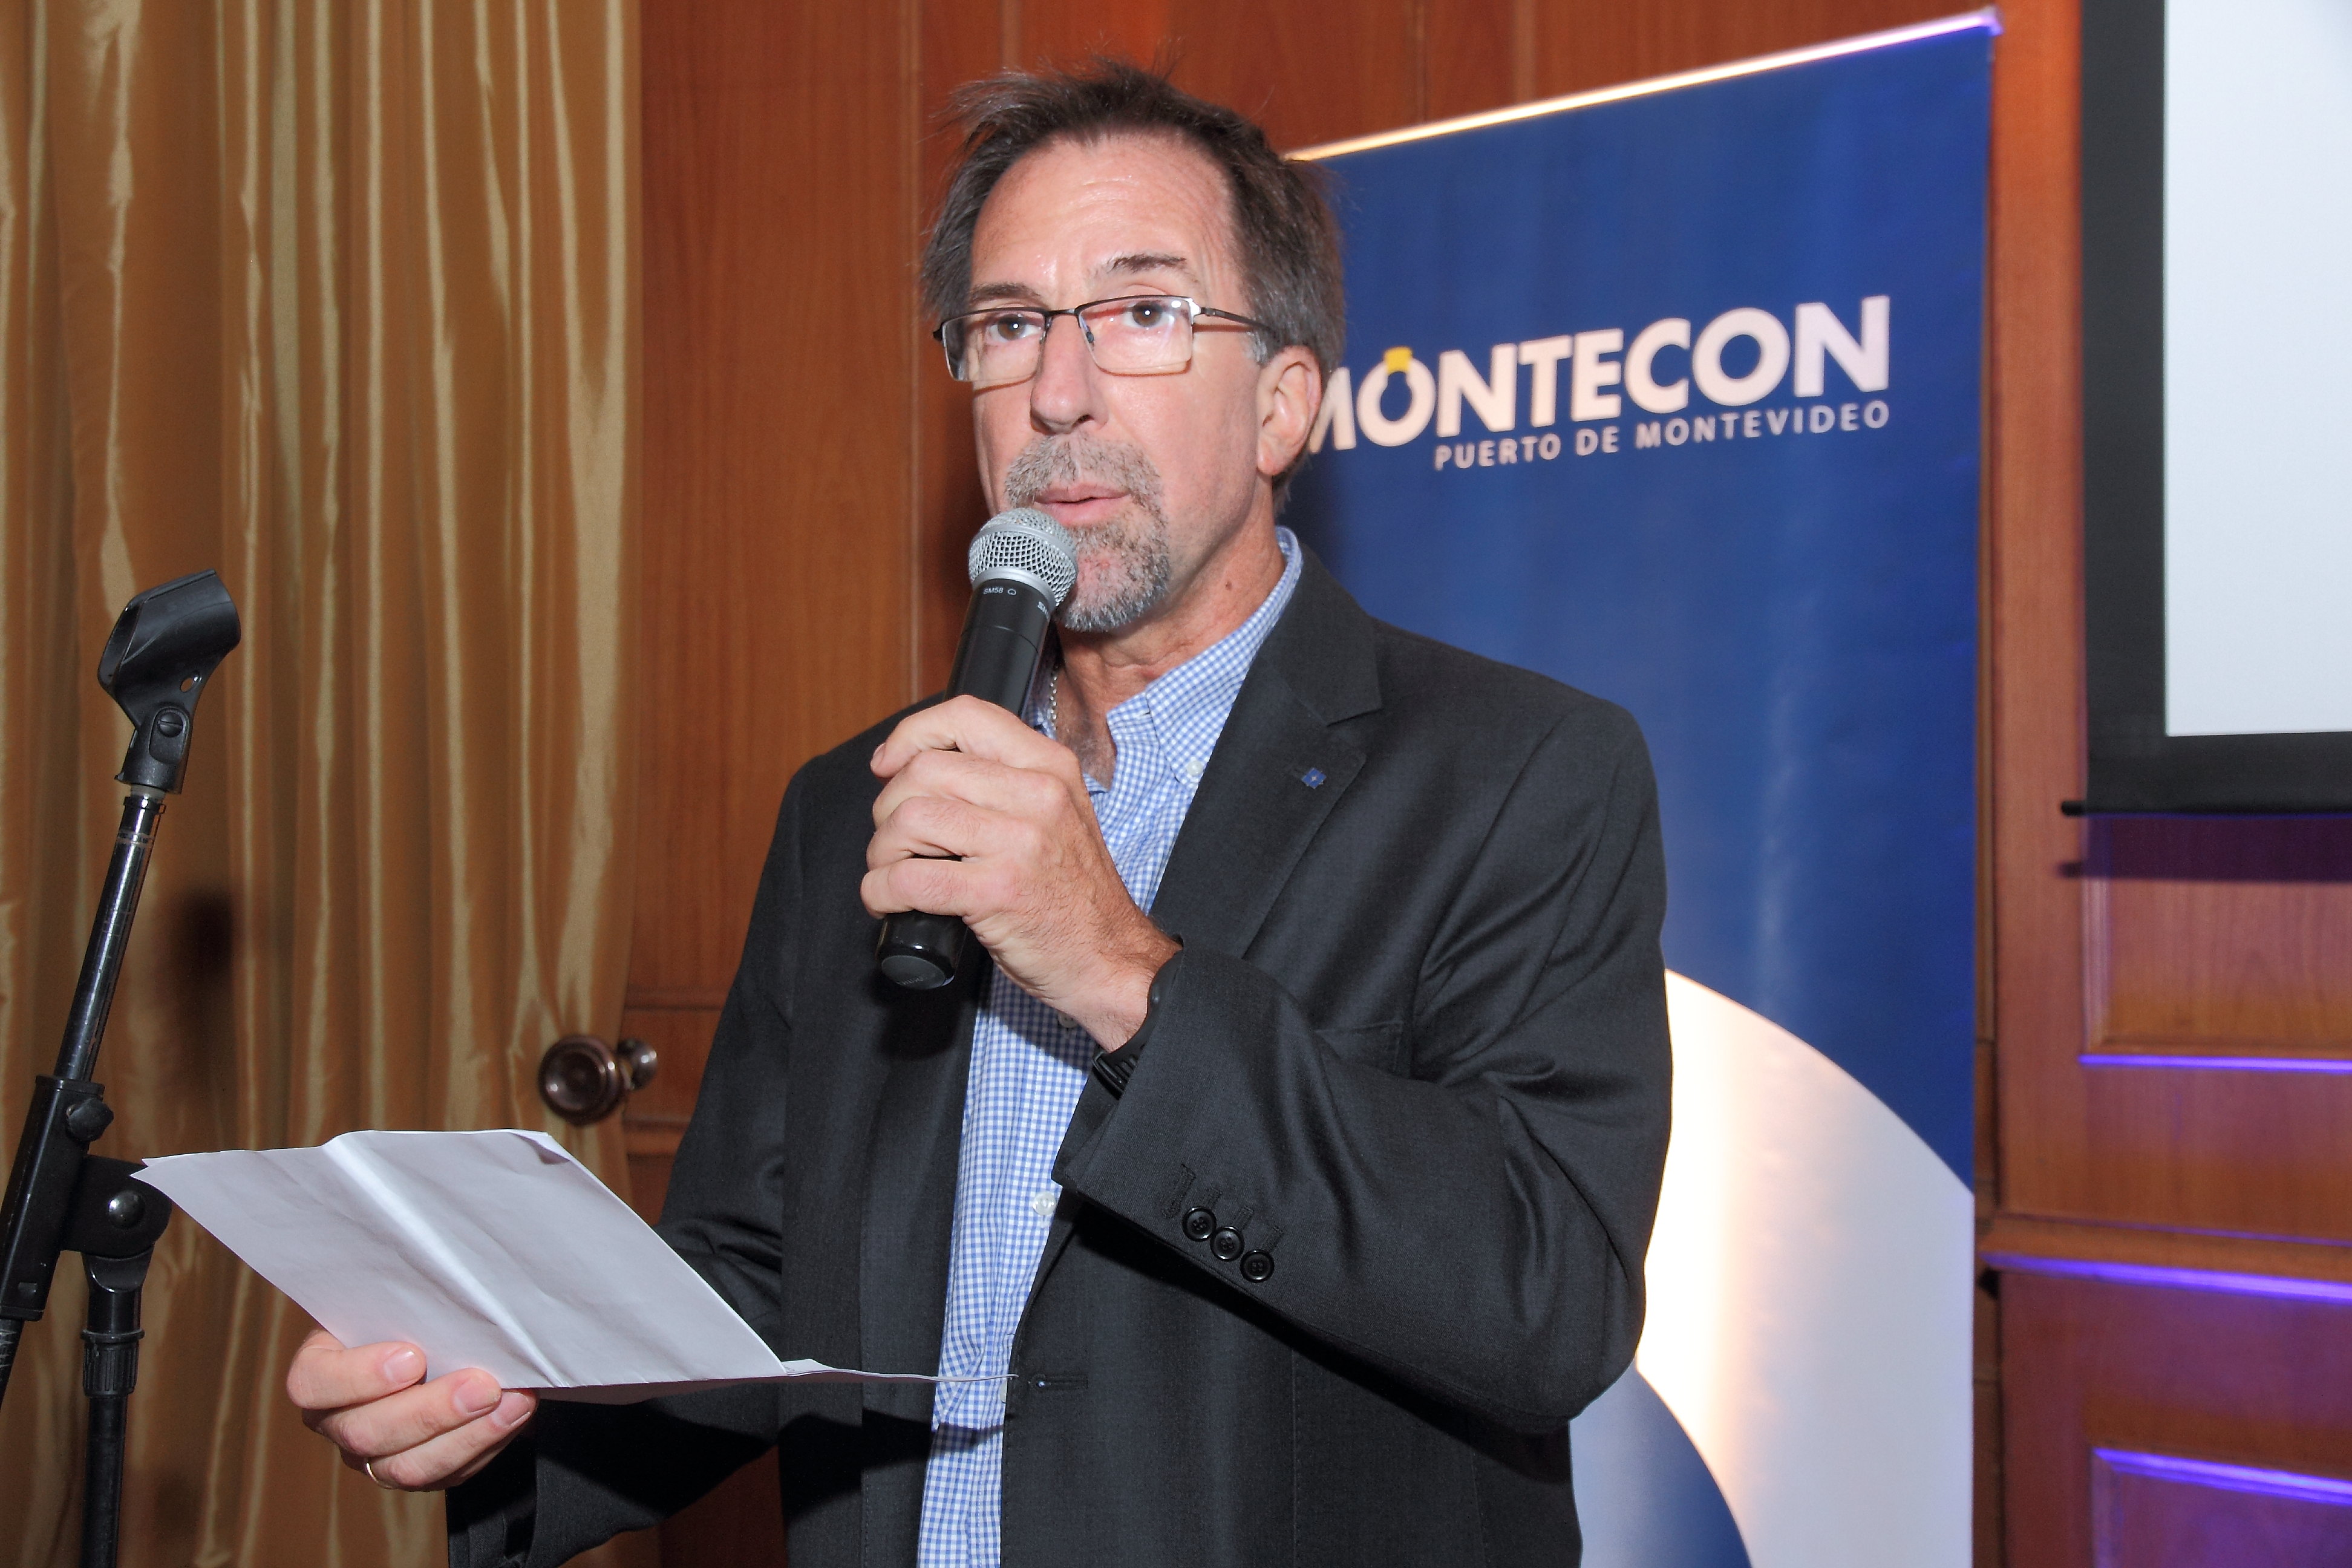 Montecon despidió el año y anunció inversiones en el Puerto de Montevideo